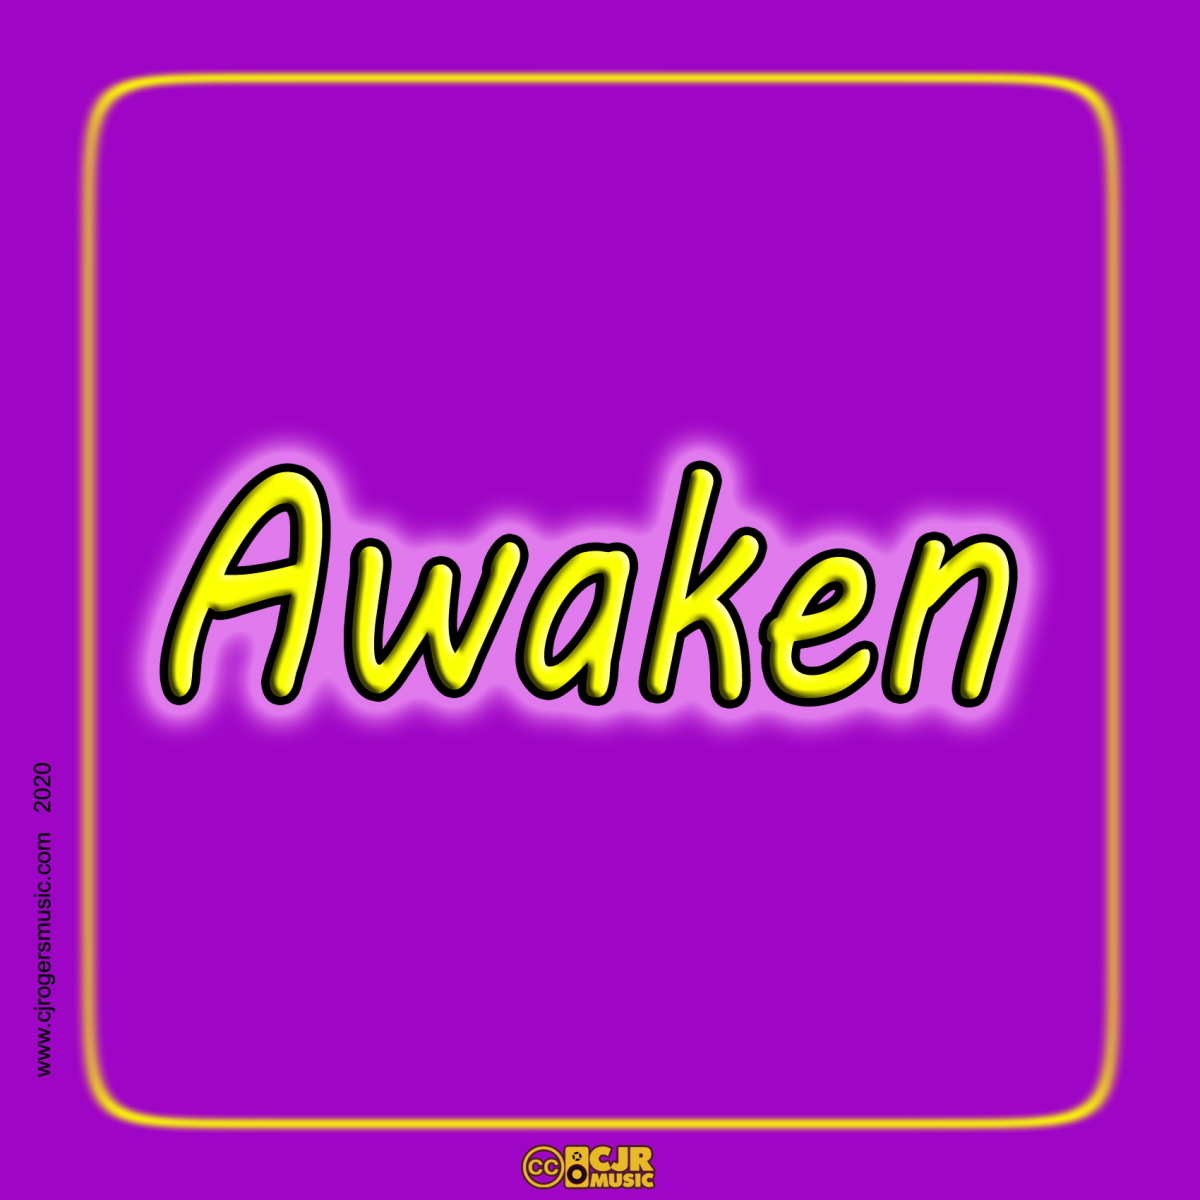 Awaken - Fullsize Cover Art